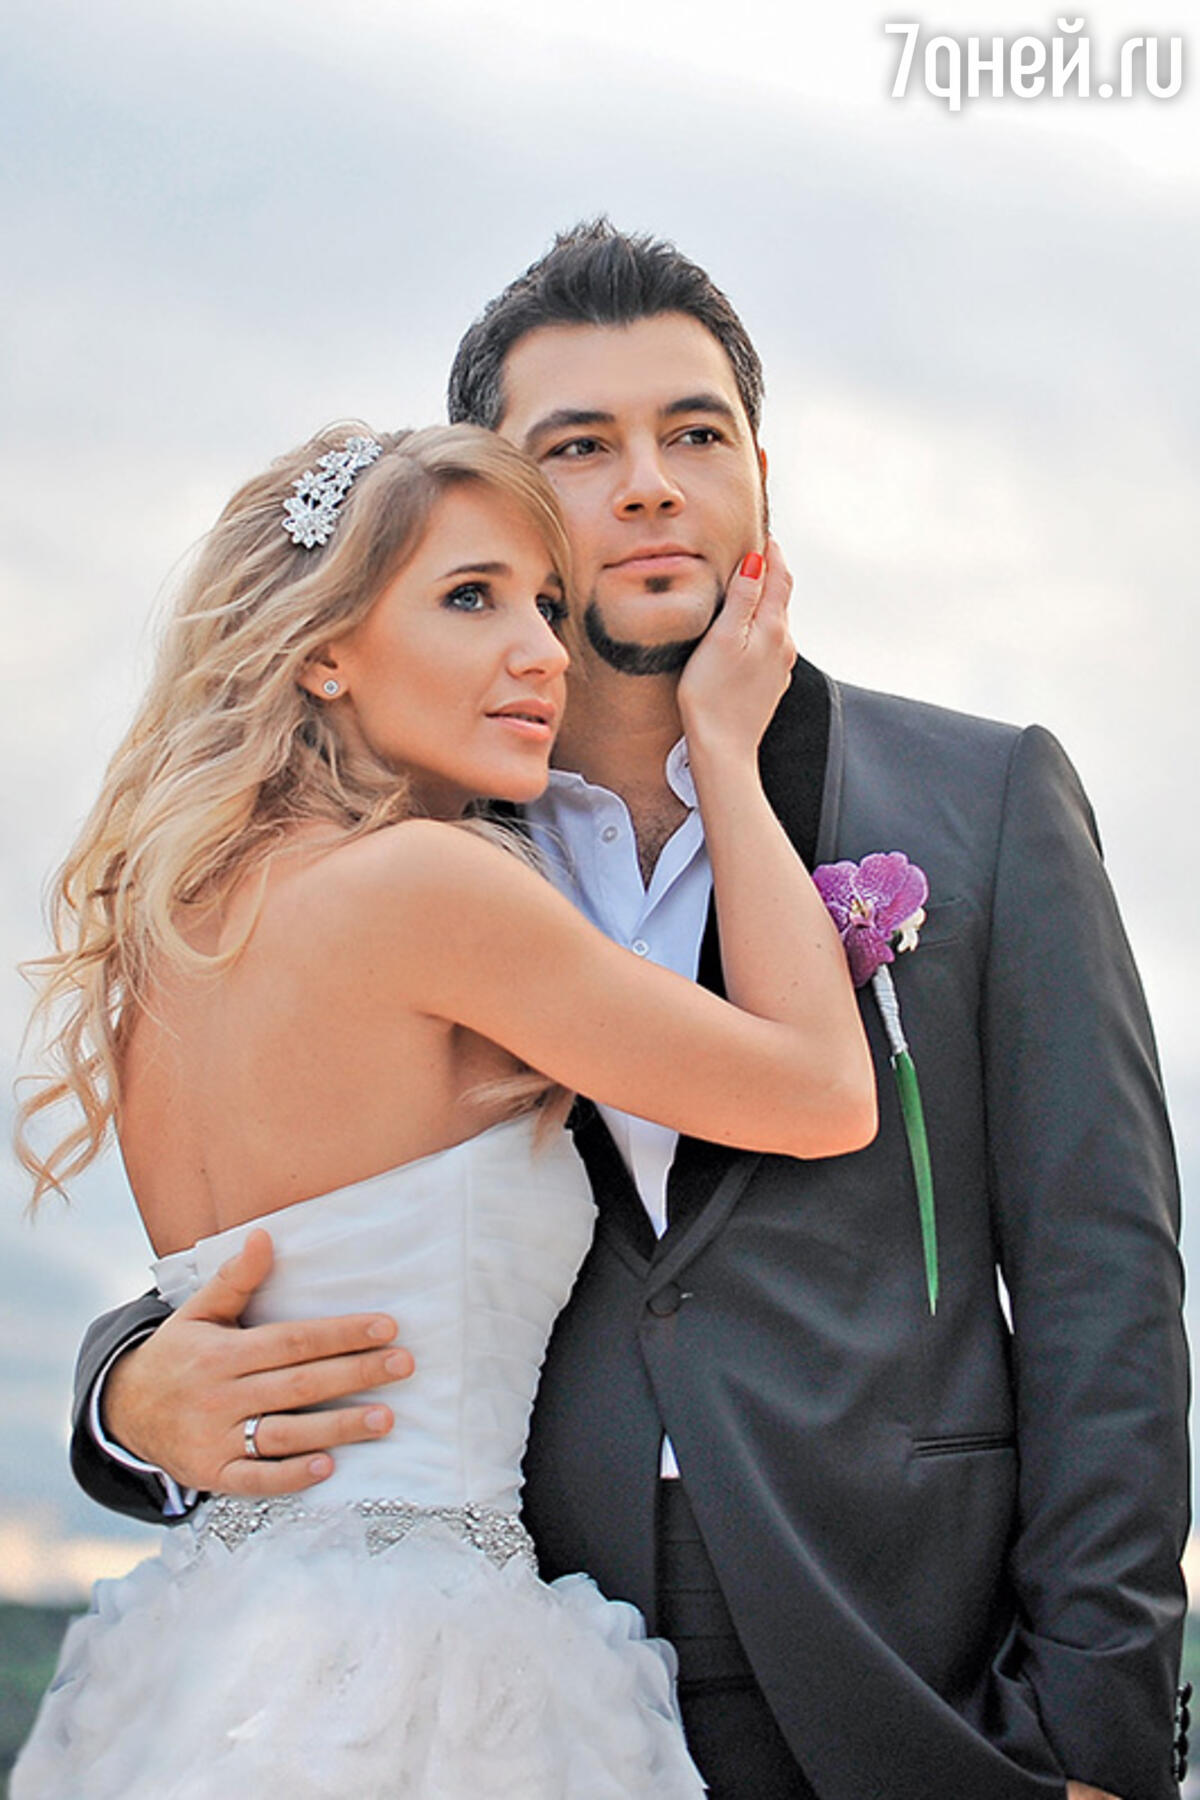 фото свадьбы ковальчук